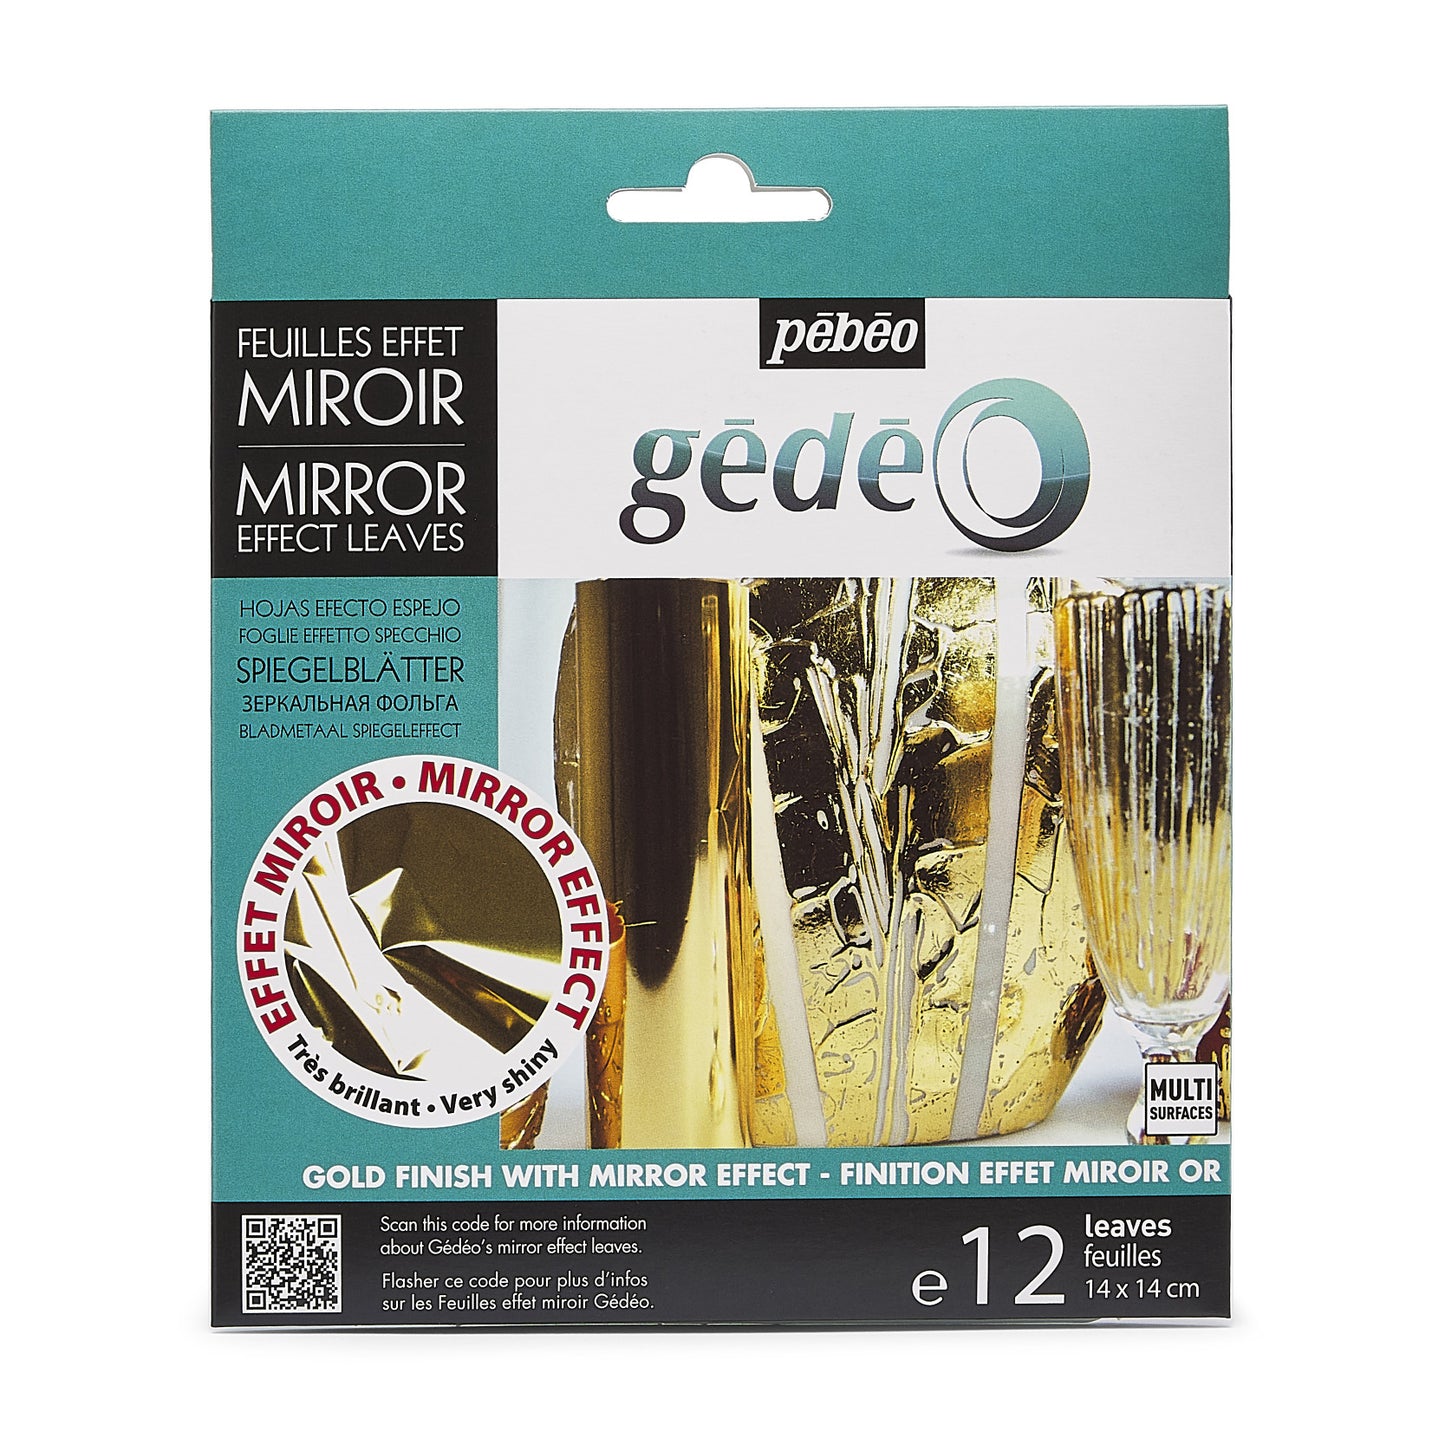 Pebeo Gedeo Mirror Effect Leaves